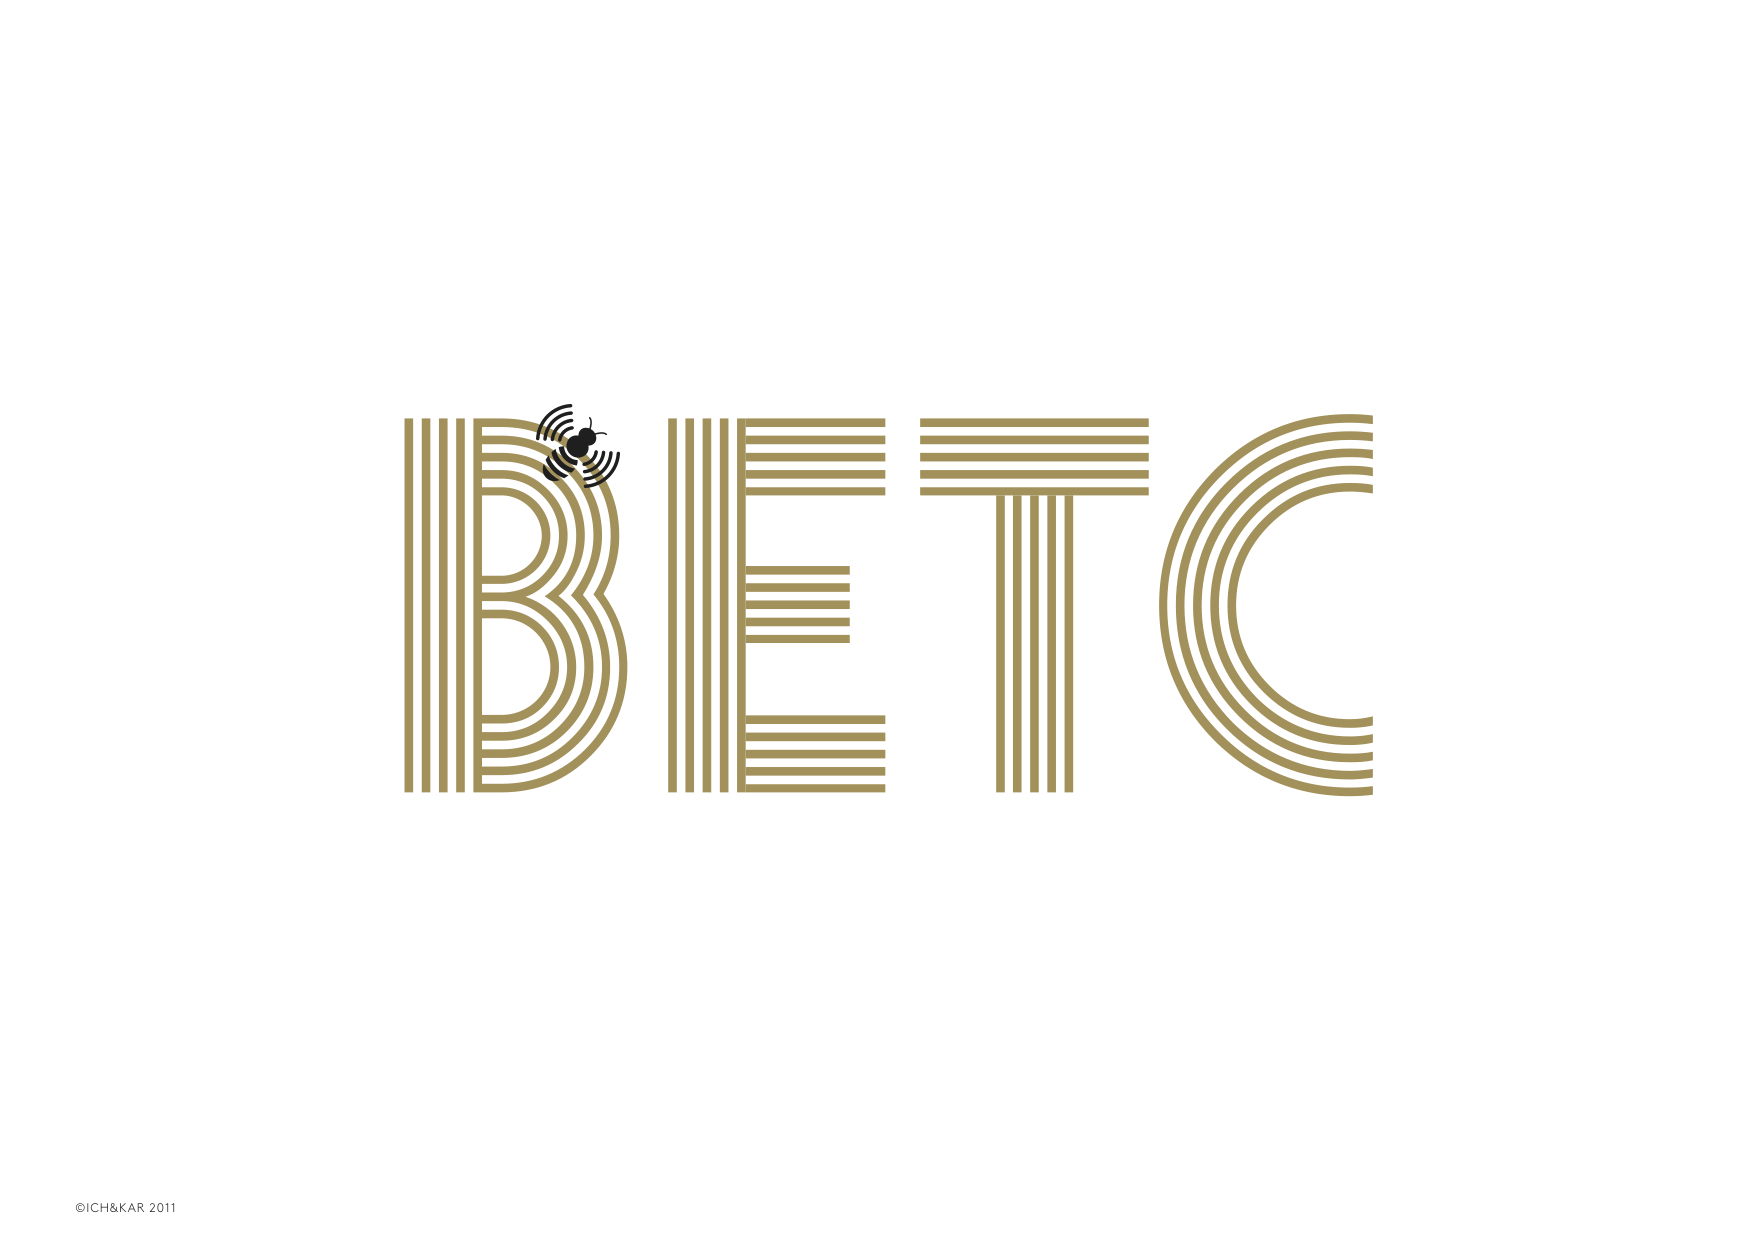 Logo_BETC